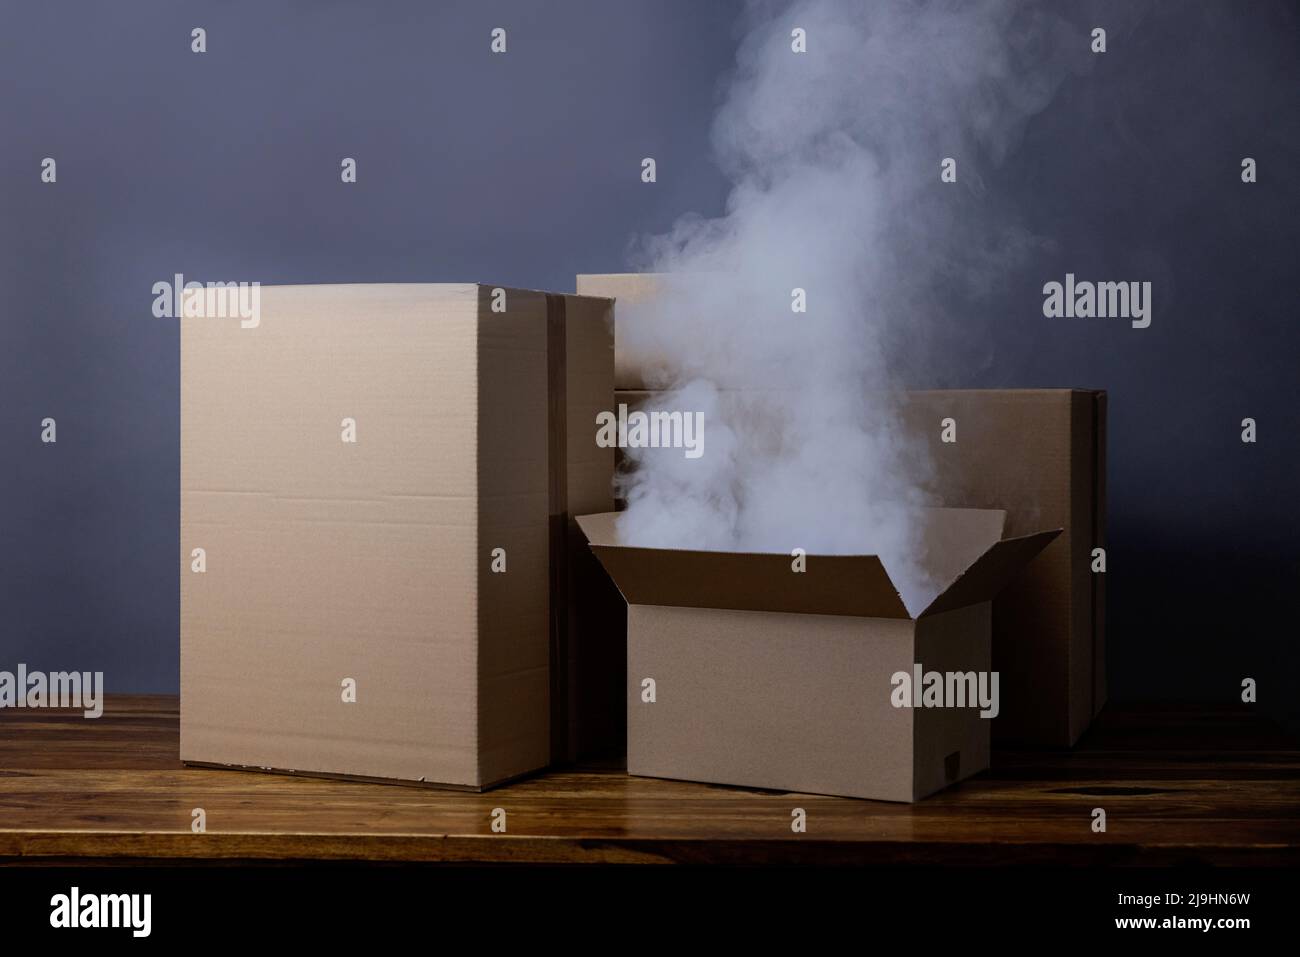 Studioaufnahme des Rauchens, der aus dem offenen Karton aufsteigt Stockfoto